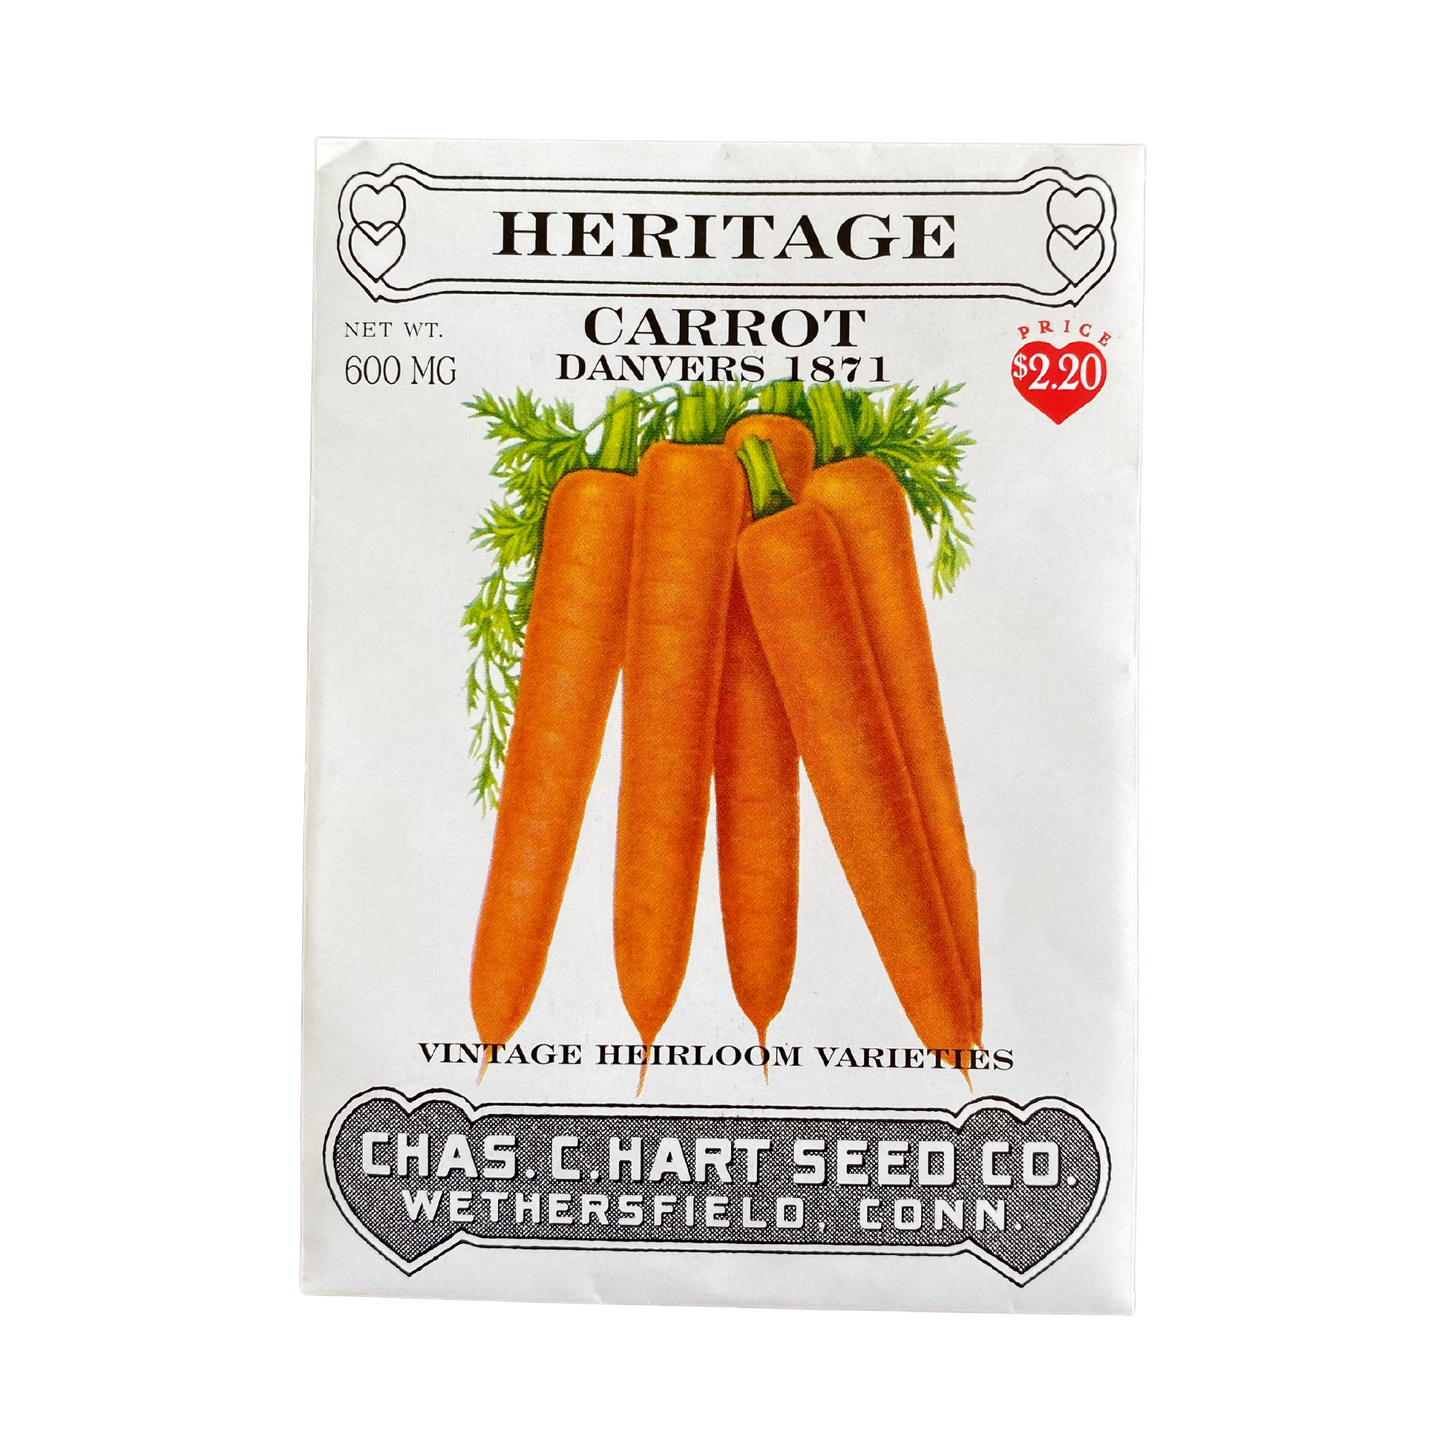 Heritage Carrot Danvers 1871